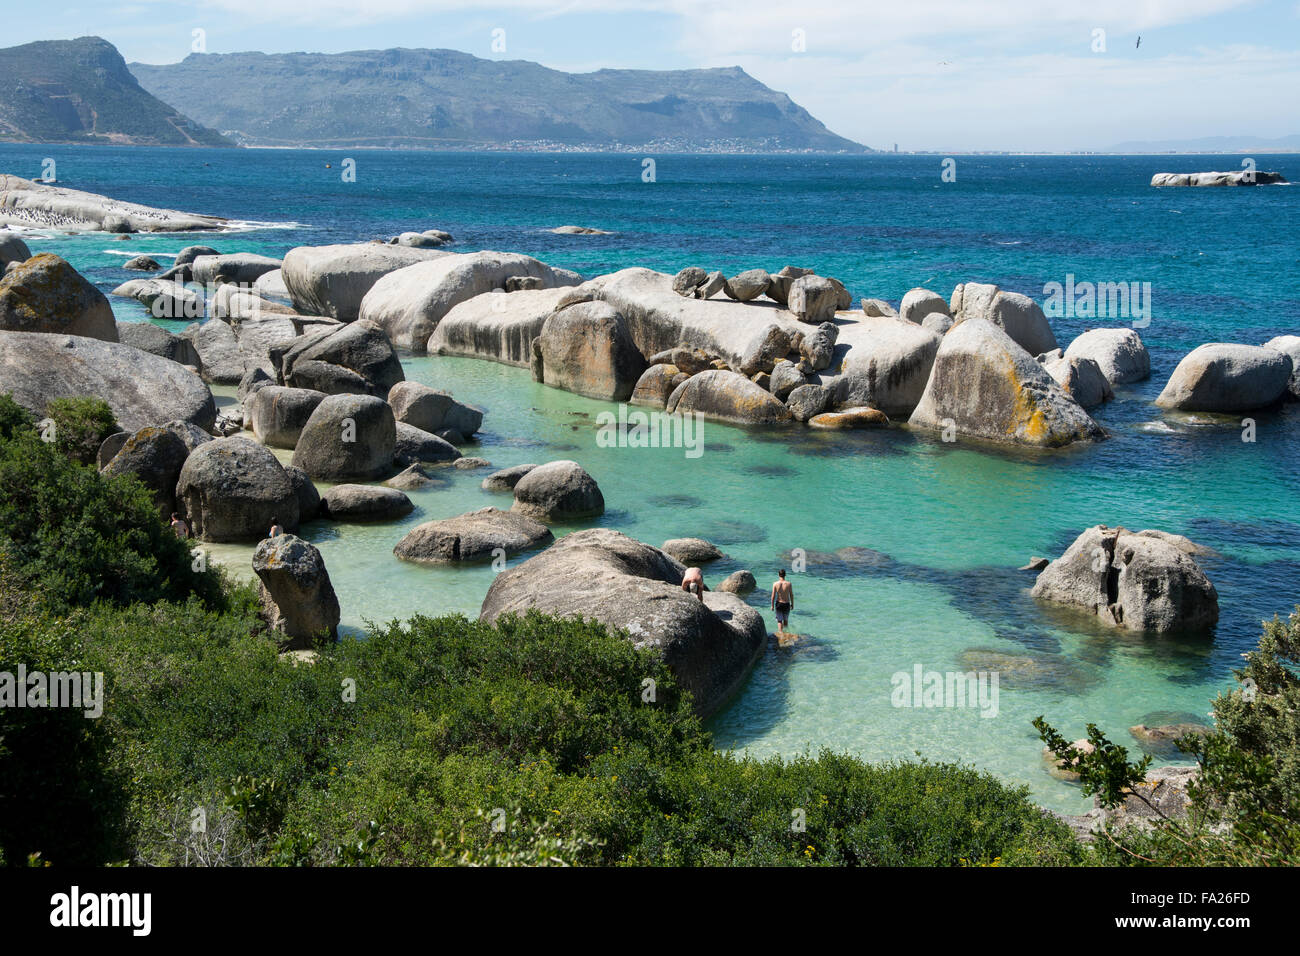 Südafrika, Kapstadt, Simons Town, Boulders Beach. Afrikanischen Pinguinkolonie (Spheniscus Demersus). Touristen, die schwimmen. Stockfoto